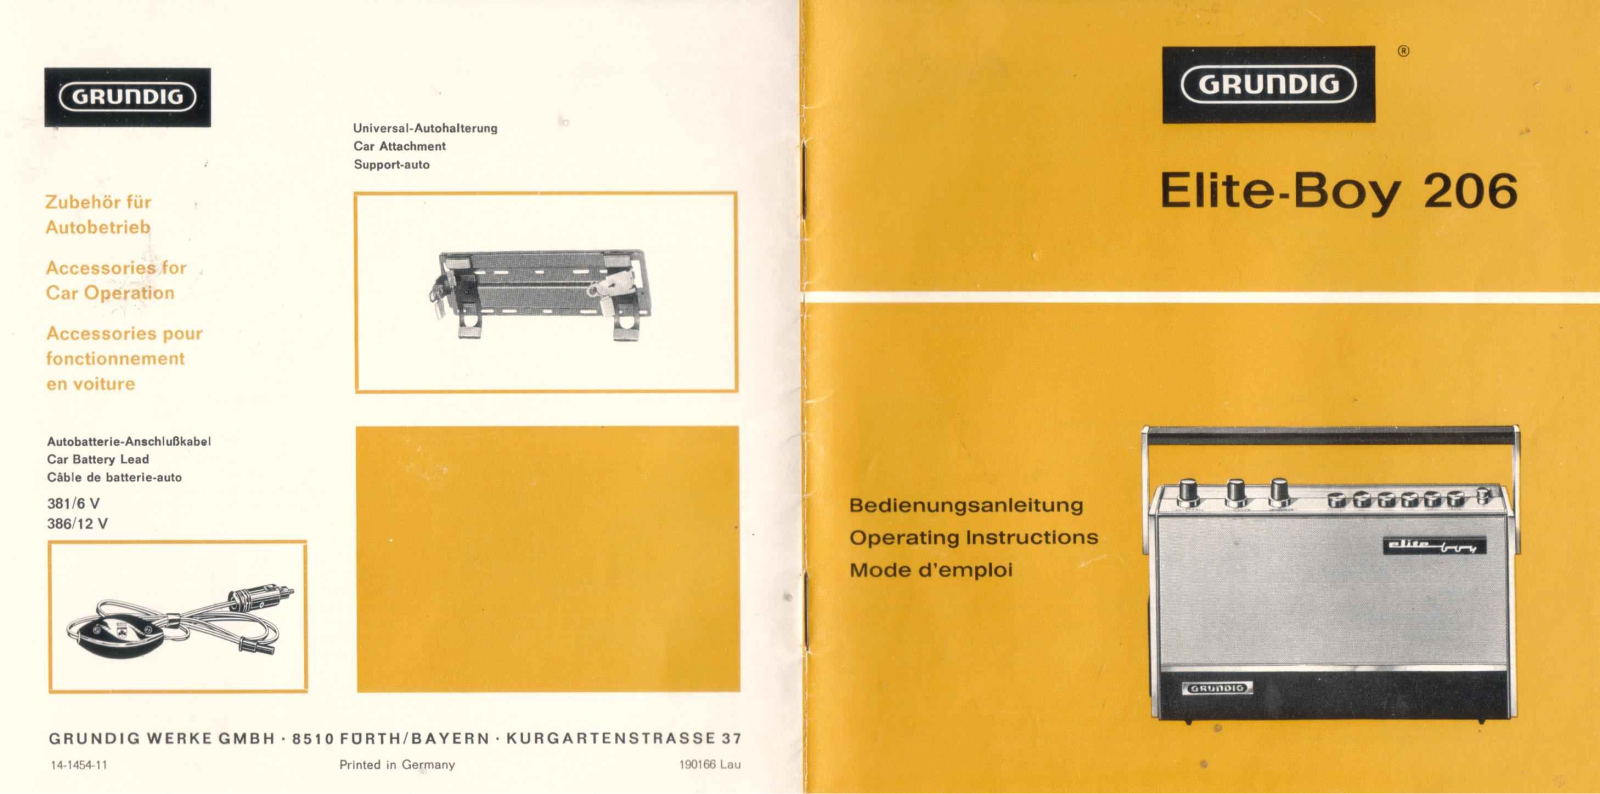 Grundig Elite-Boy-206 Owners Manual